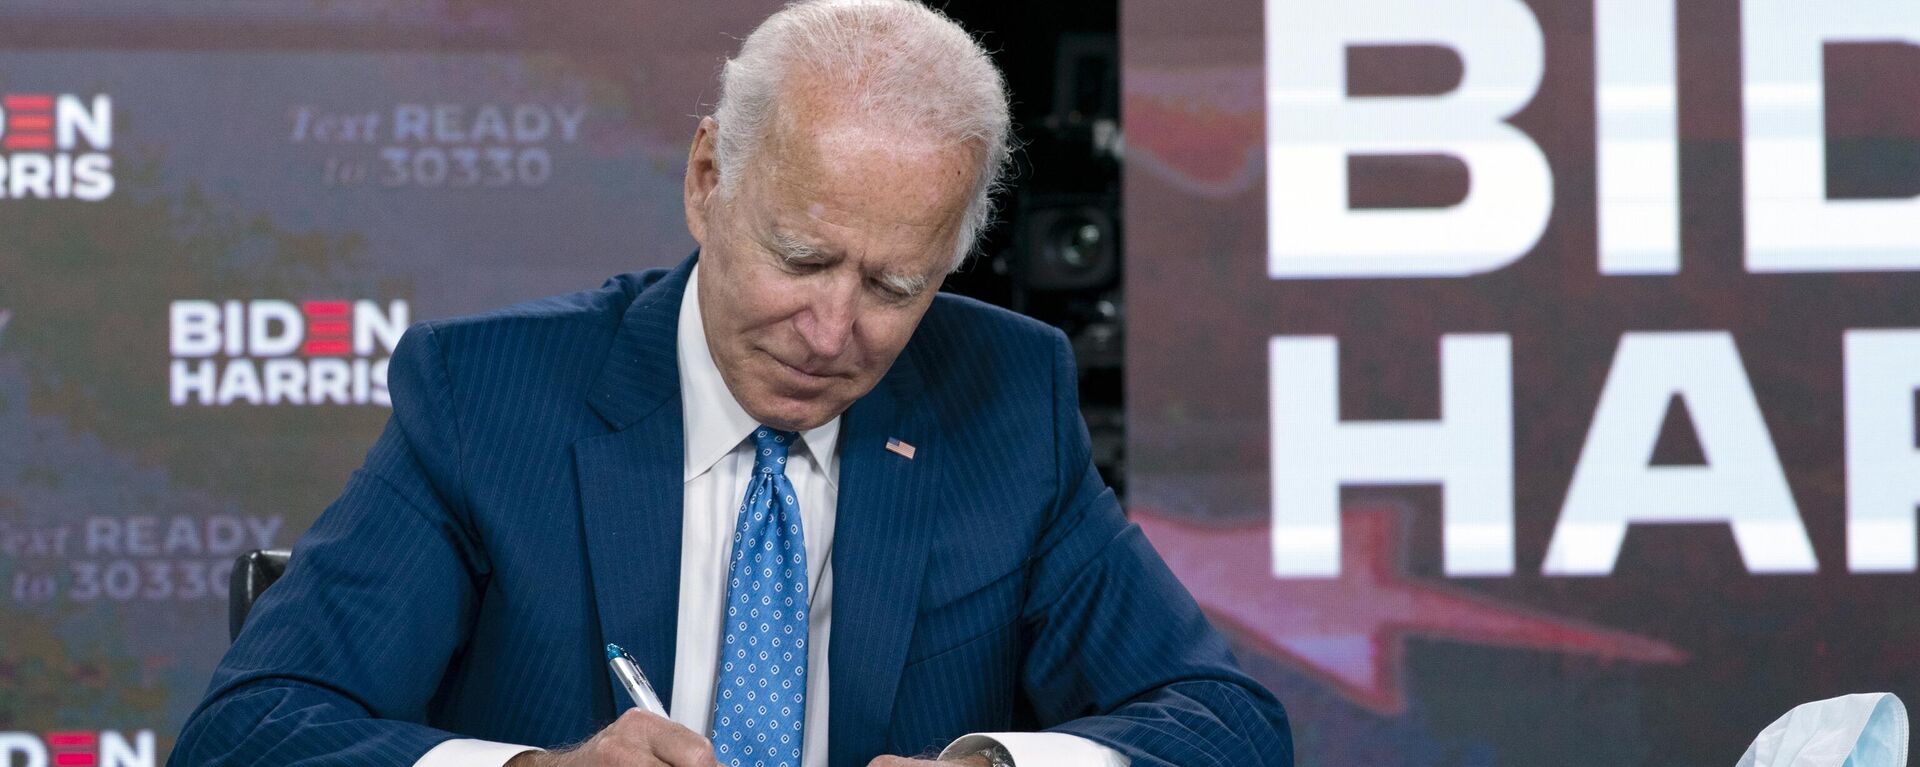 Joe Biden, assina os documentos necessários para receber a indicação democrata para presidente dos Estados Unidos em Wilmington (foto de arquivo) - Sputnik Brasil, 1920, 23.12.2022